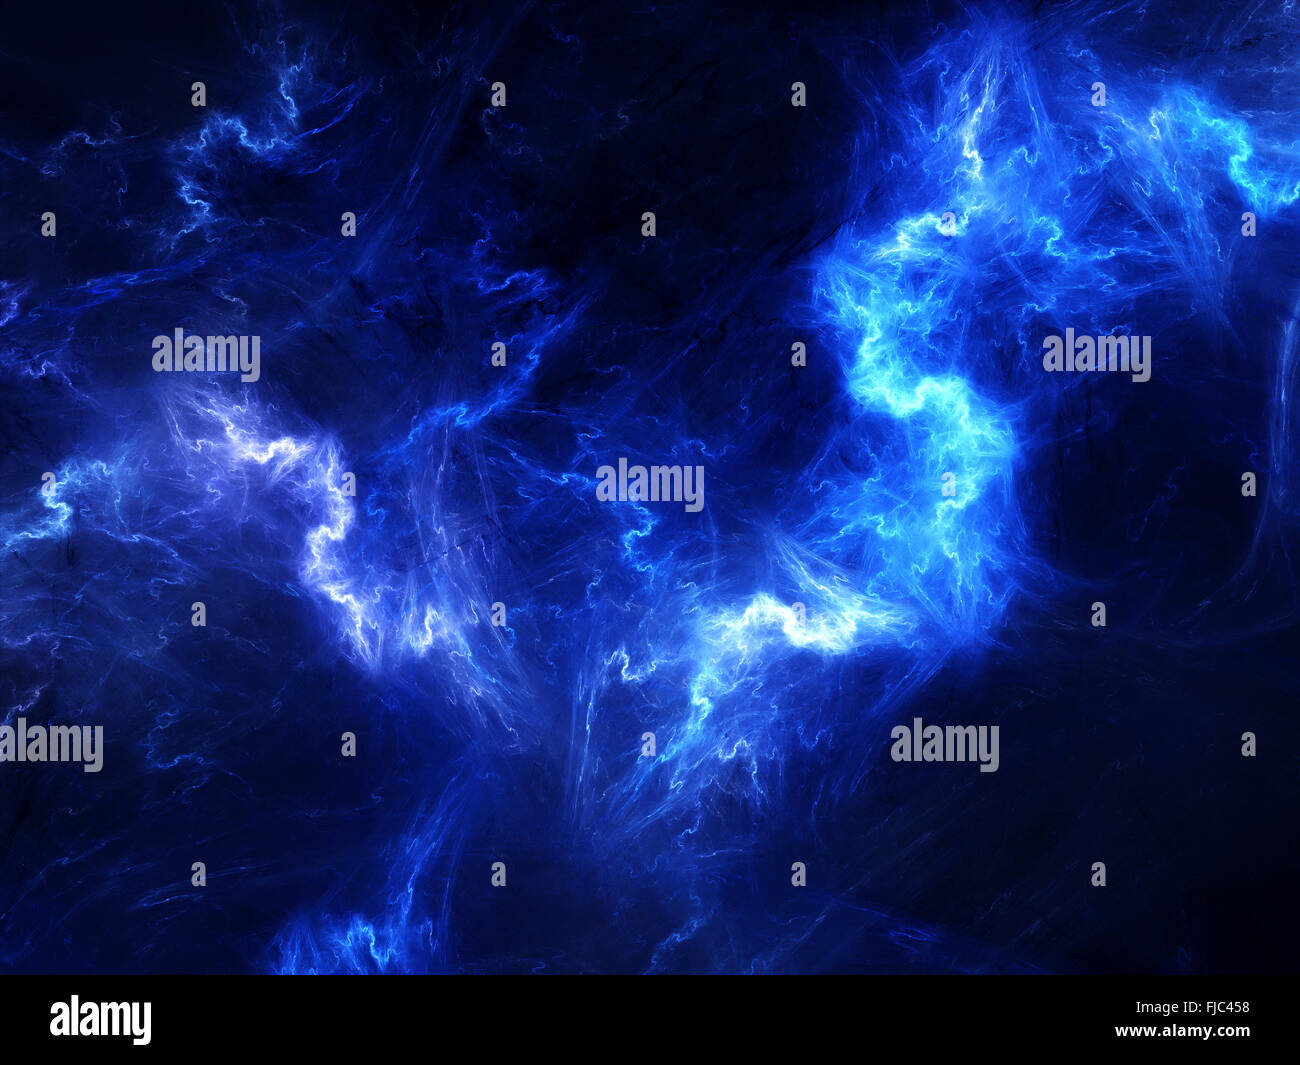 High energy Plasma im Raum, Computer-generierte Zusammenfassung Hintergrund Stockfoto